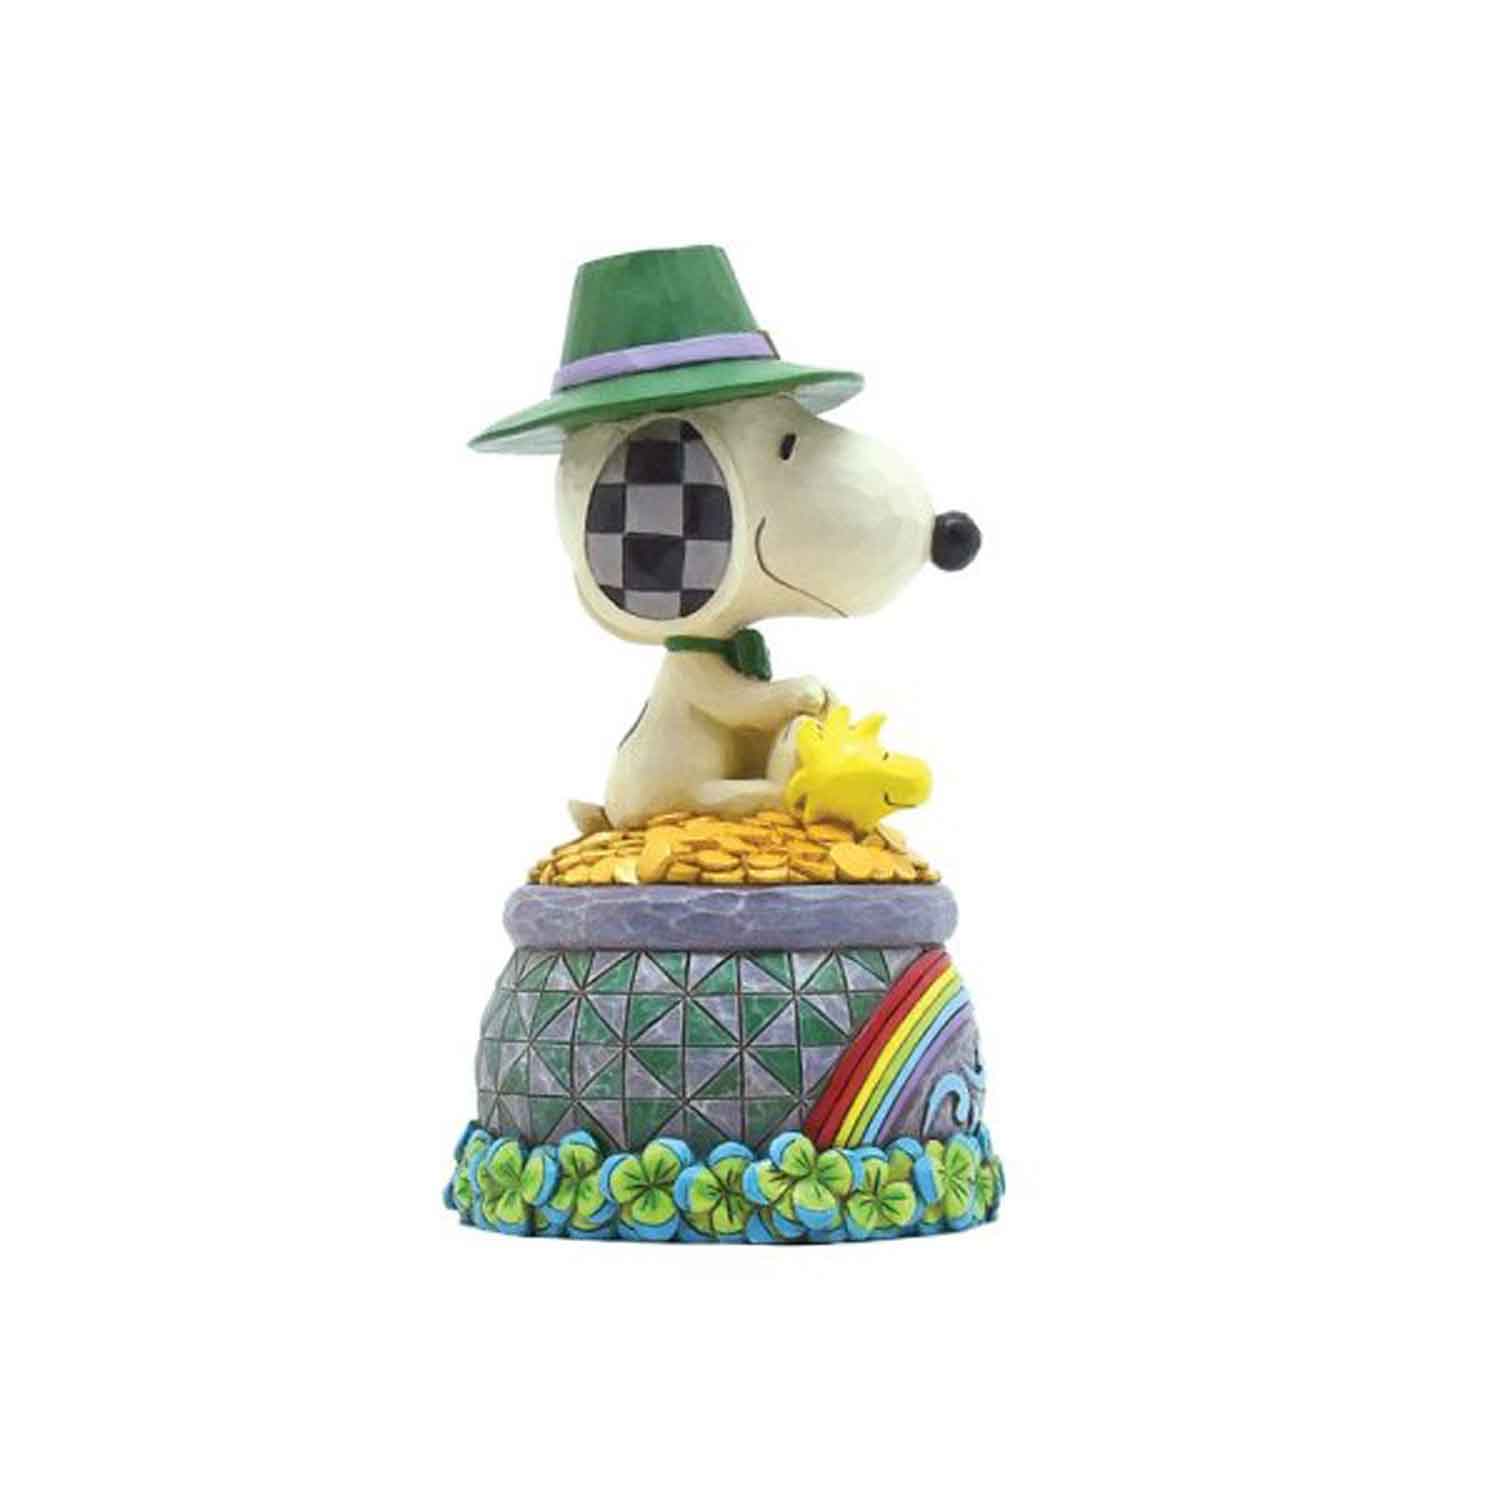 Peanuts-Snoopy-&-Woodstock-"Topf-voller-Gold"-Jim-Shore-Figur-berlindeluxe-hund-hut-geld-kuecken